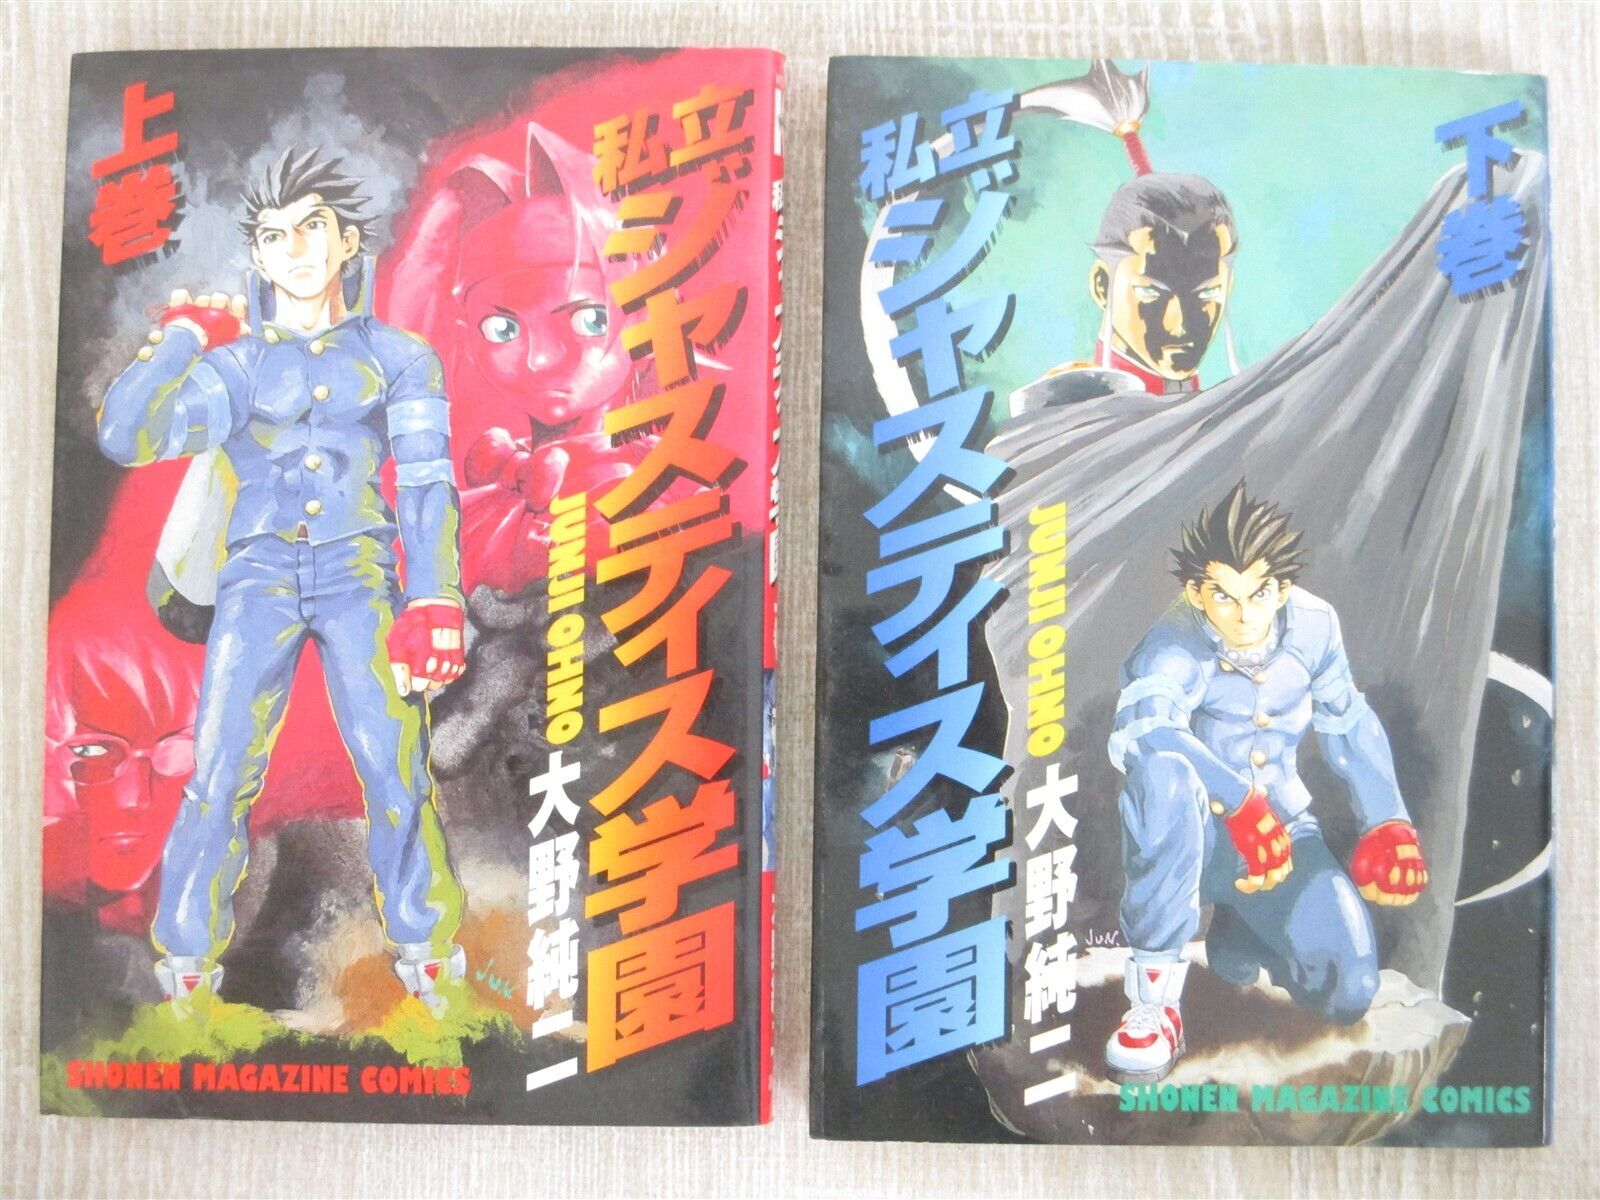 JUSTICE GAKUEN Shiritsu Manga Comic Complete Set 1&2 JUNJI OHNO PS1 Book KO